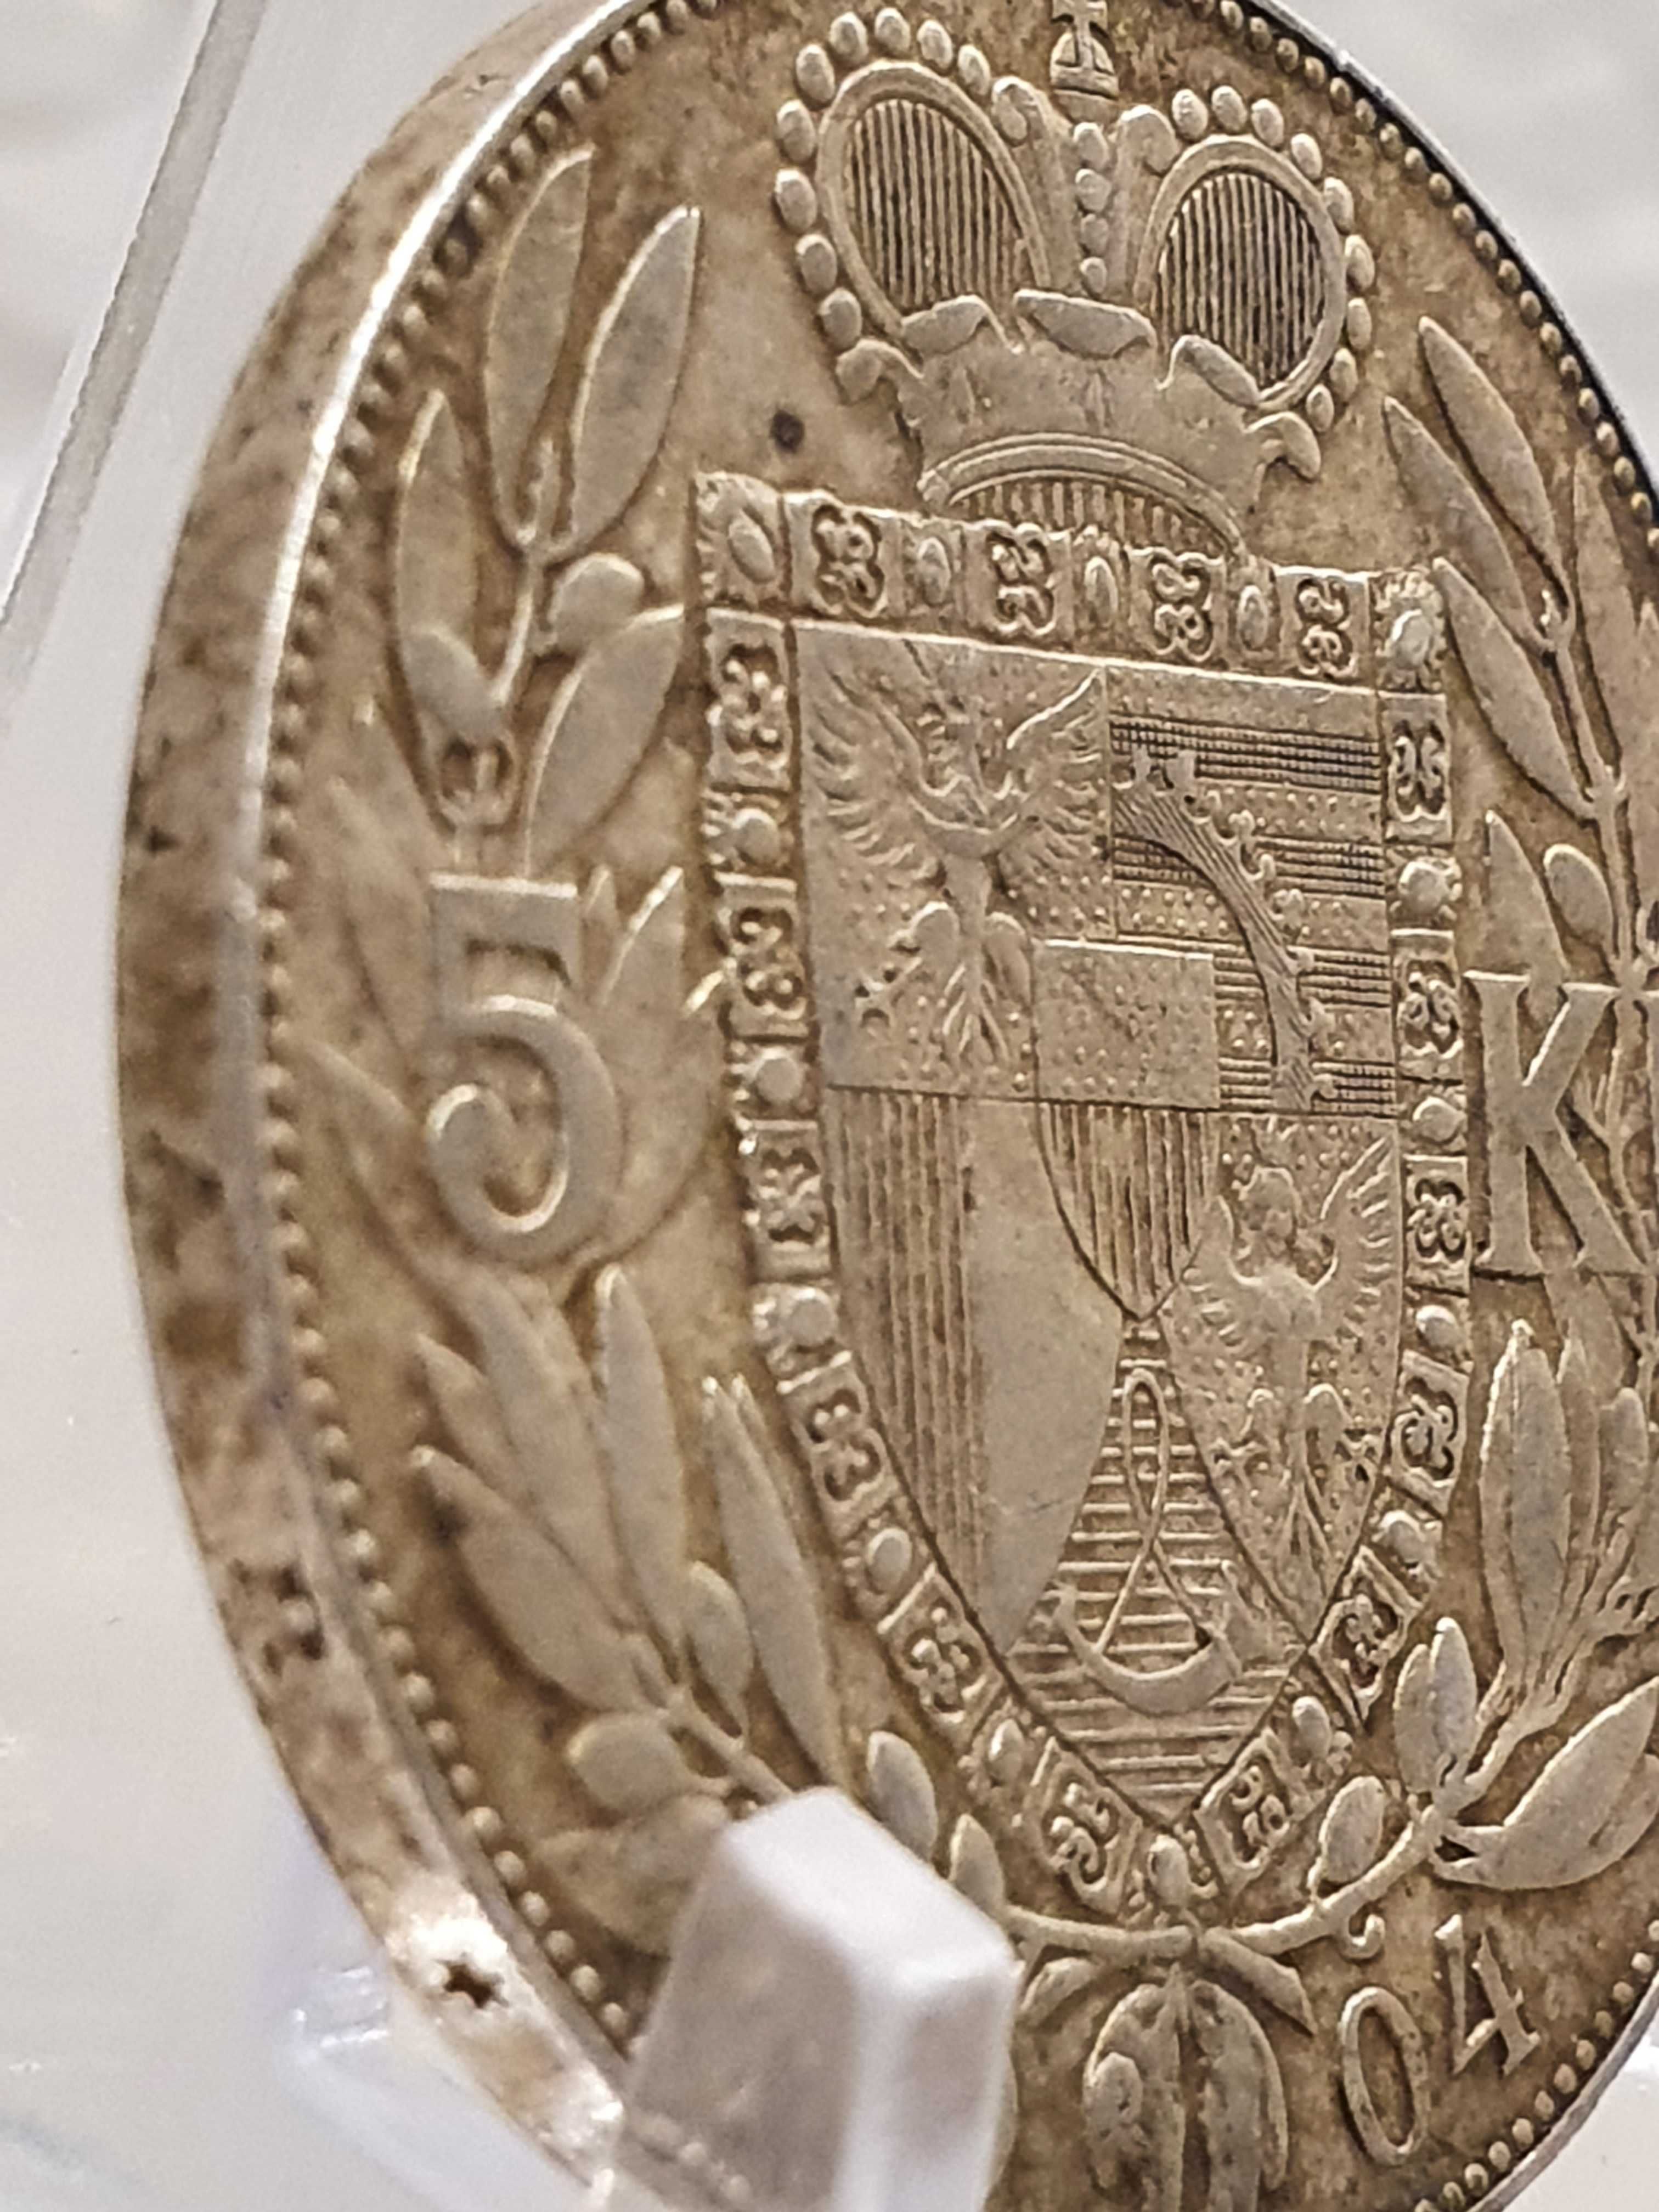 5 koron Liechtenstein  1904 r Extremalnie rzadkie - STAN  !!!